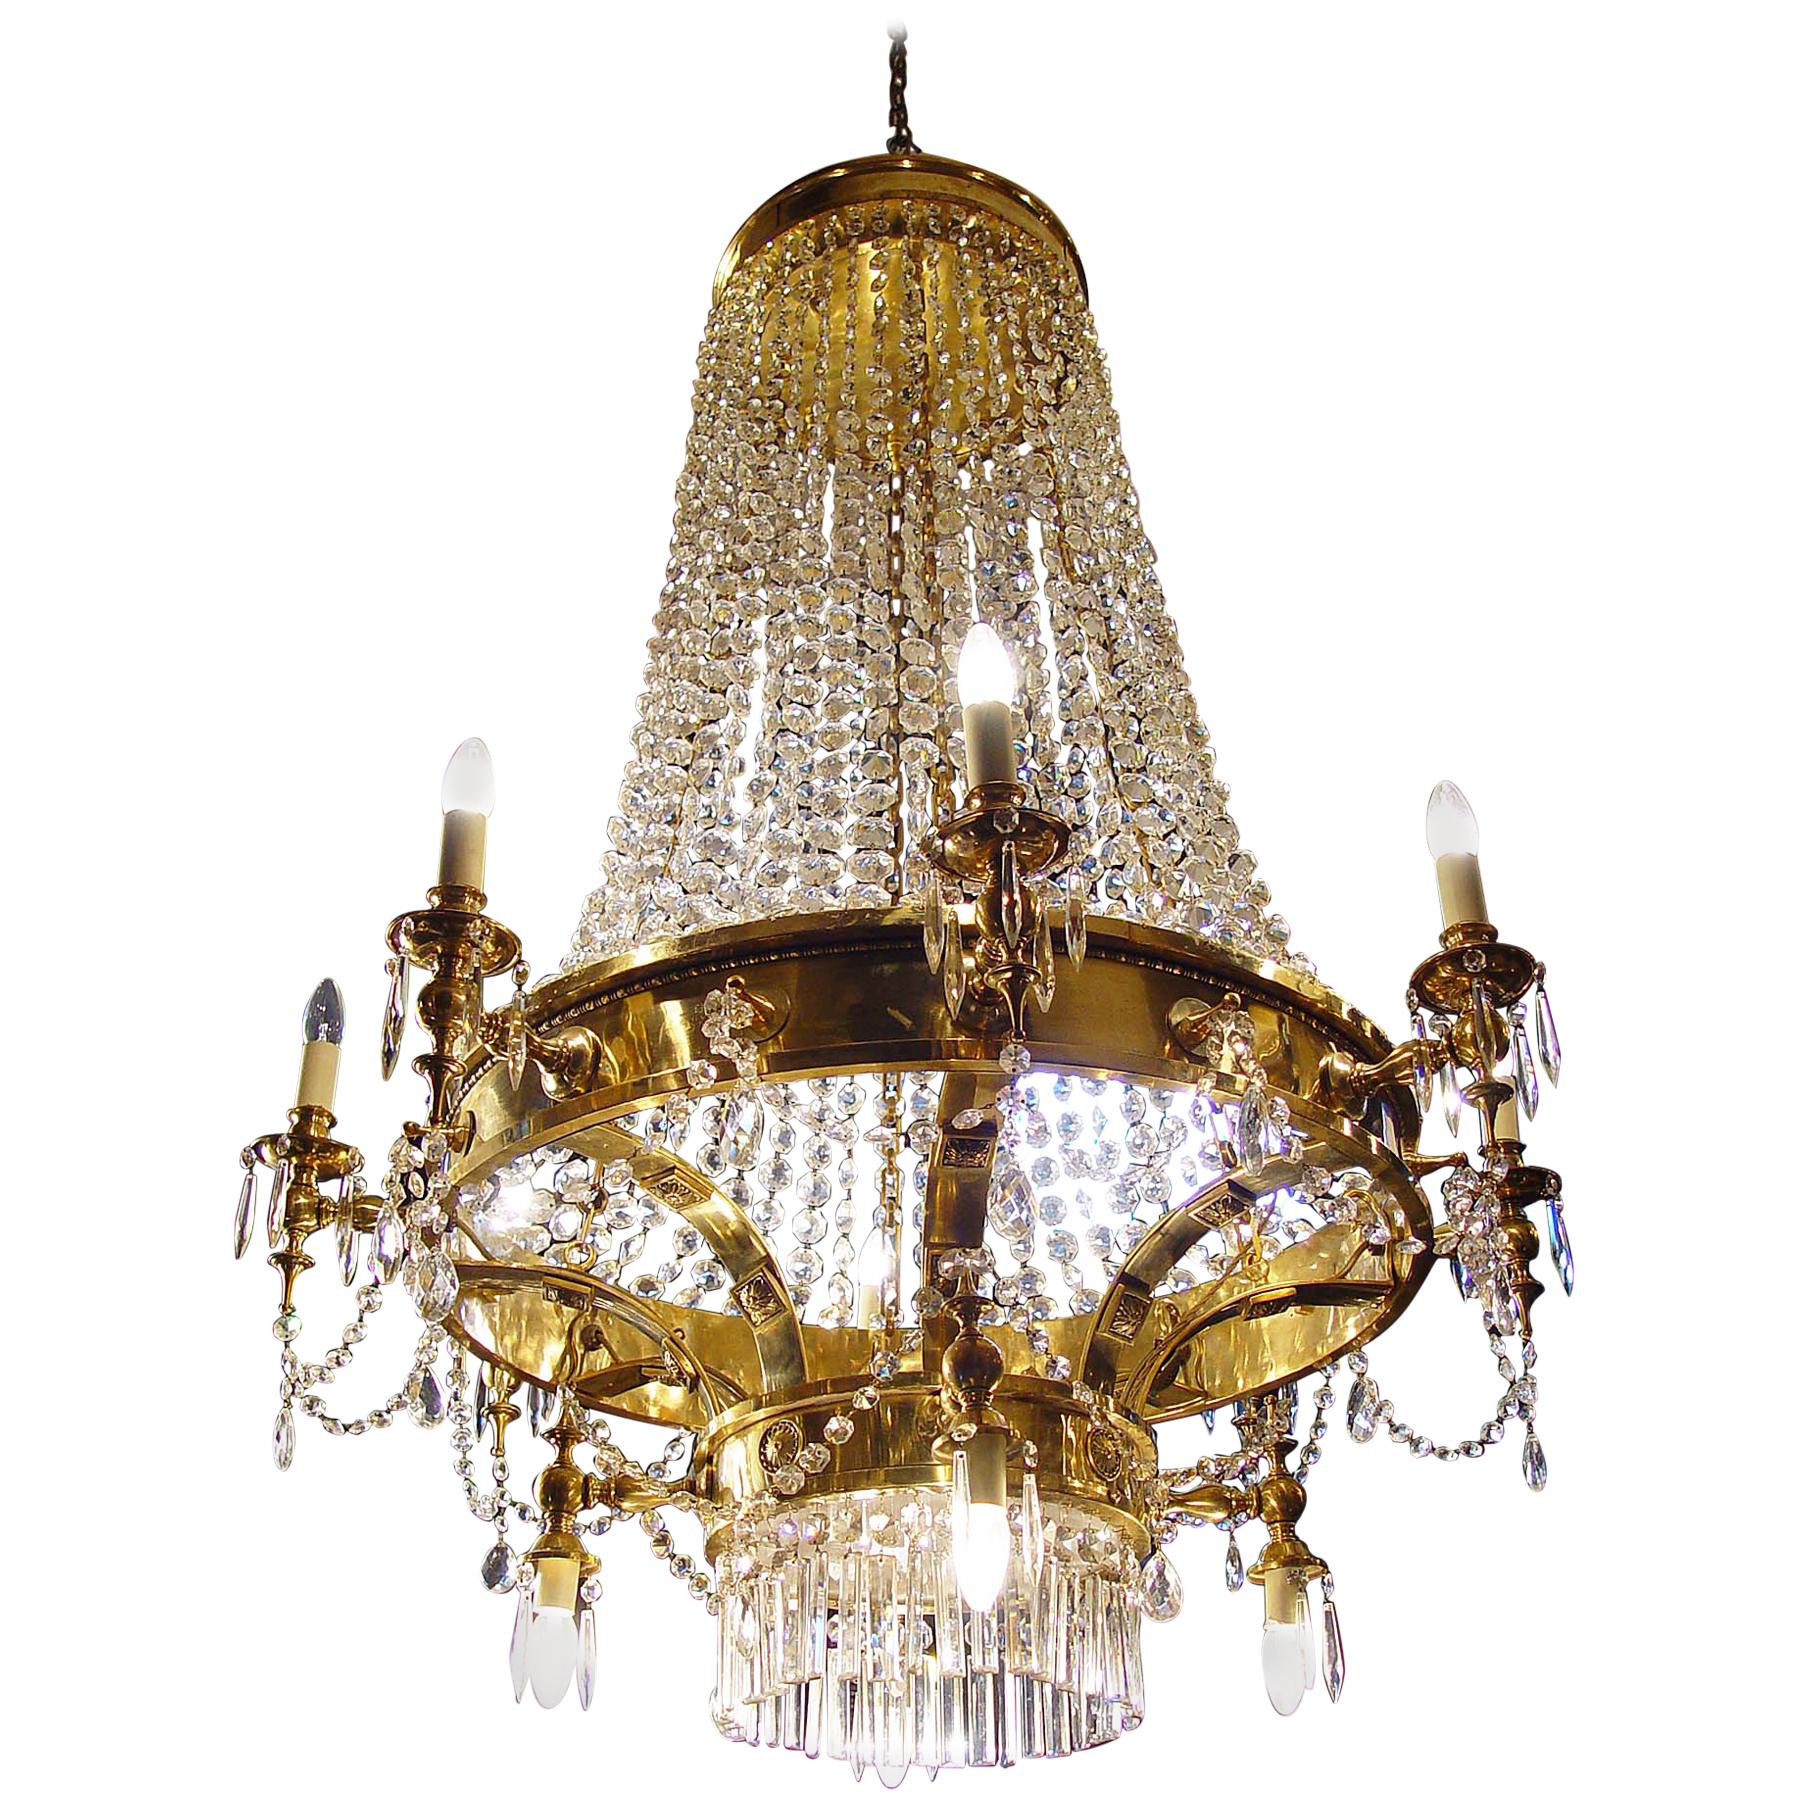 Großer zwölfflammiger Kristallkronleuchter im englischen Regency-Stil mit zwölf Lichtern